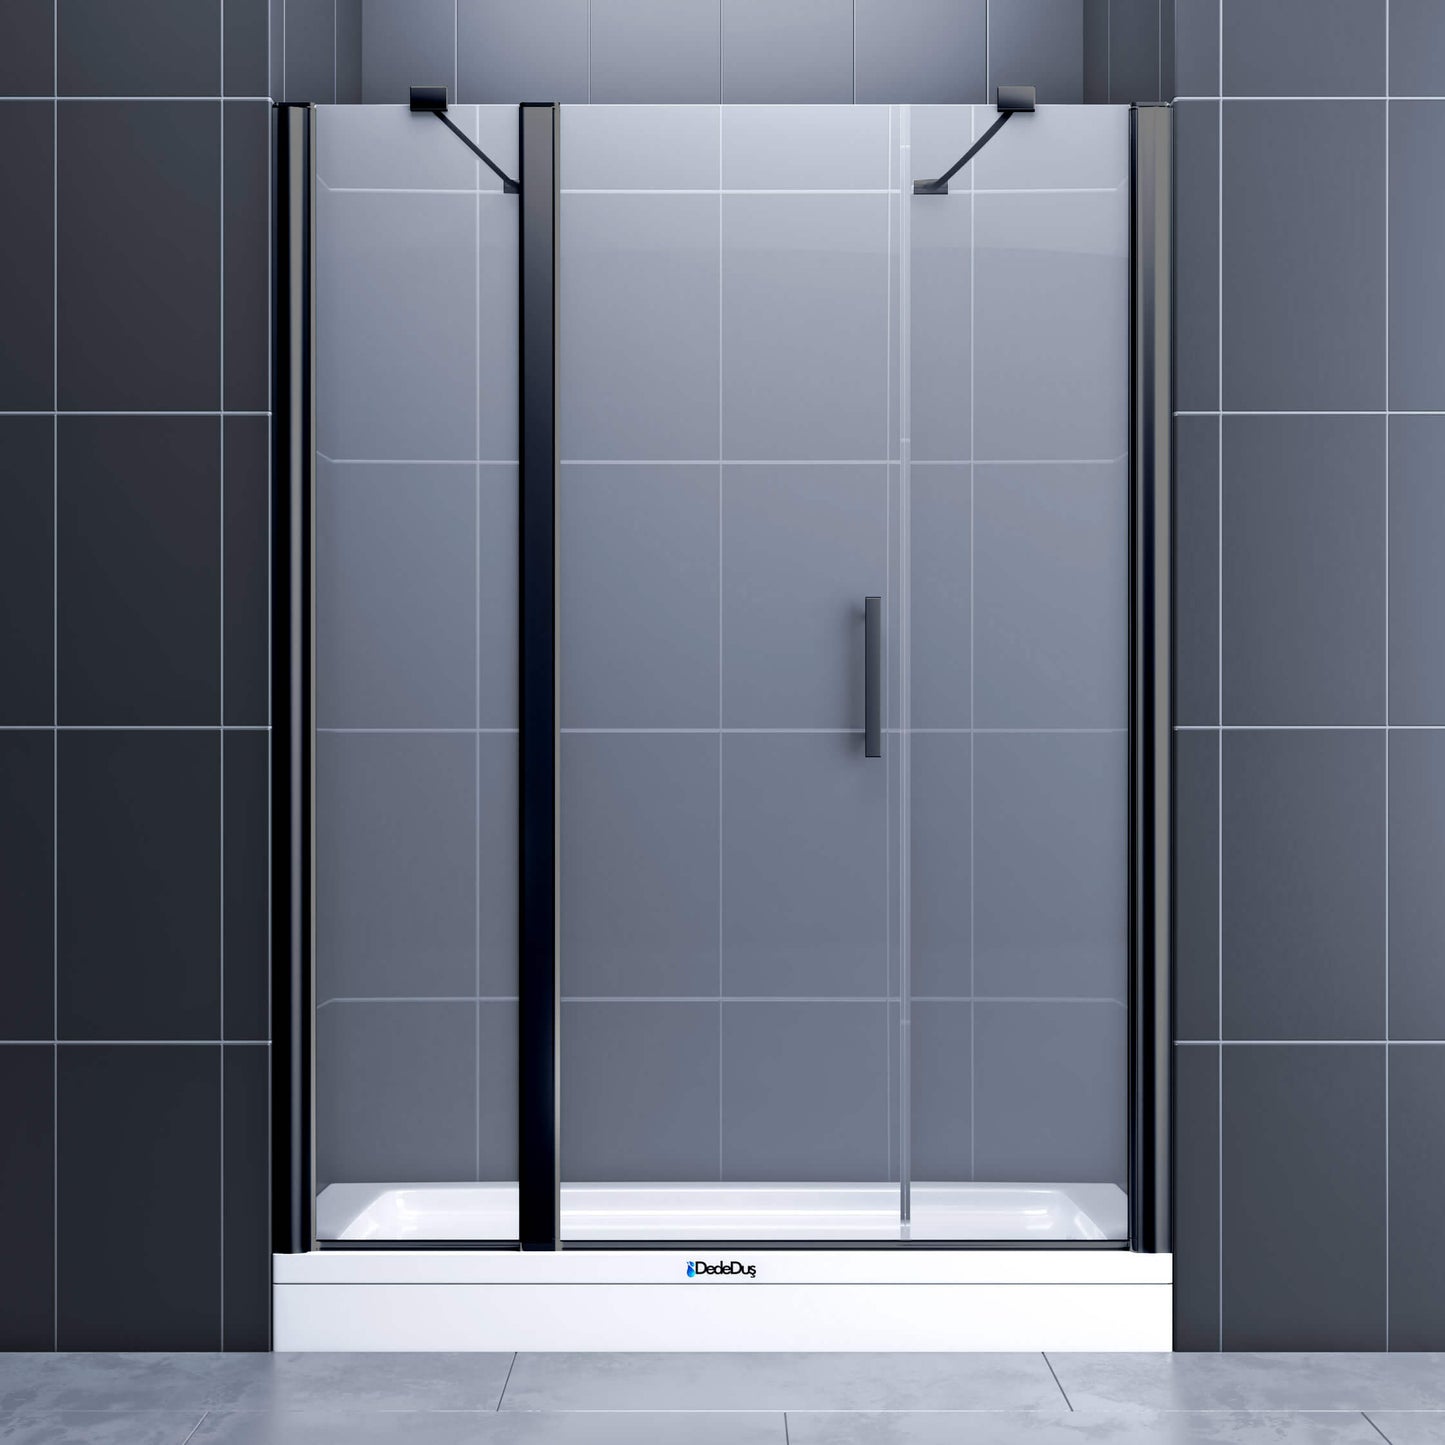 Duvardan duvara, 2 sabit, 1 boy menteşeli kapı, siyah profil renkli duşakabin Kanlıca Dede Duş